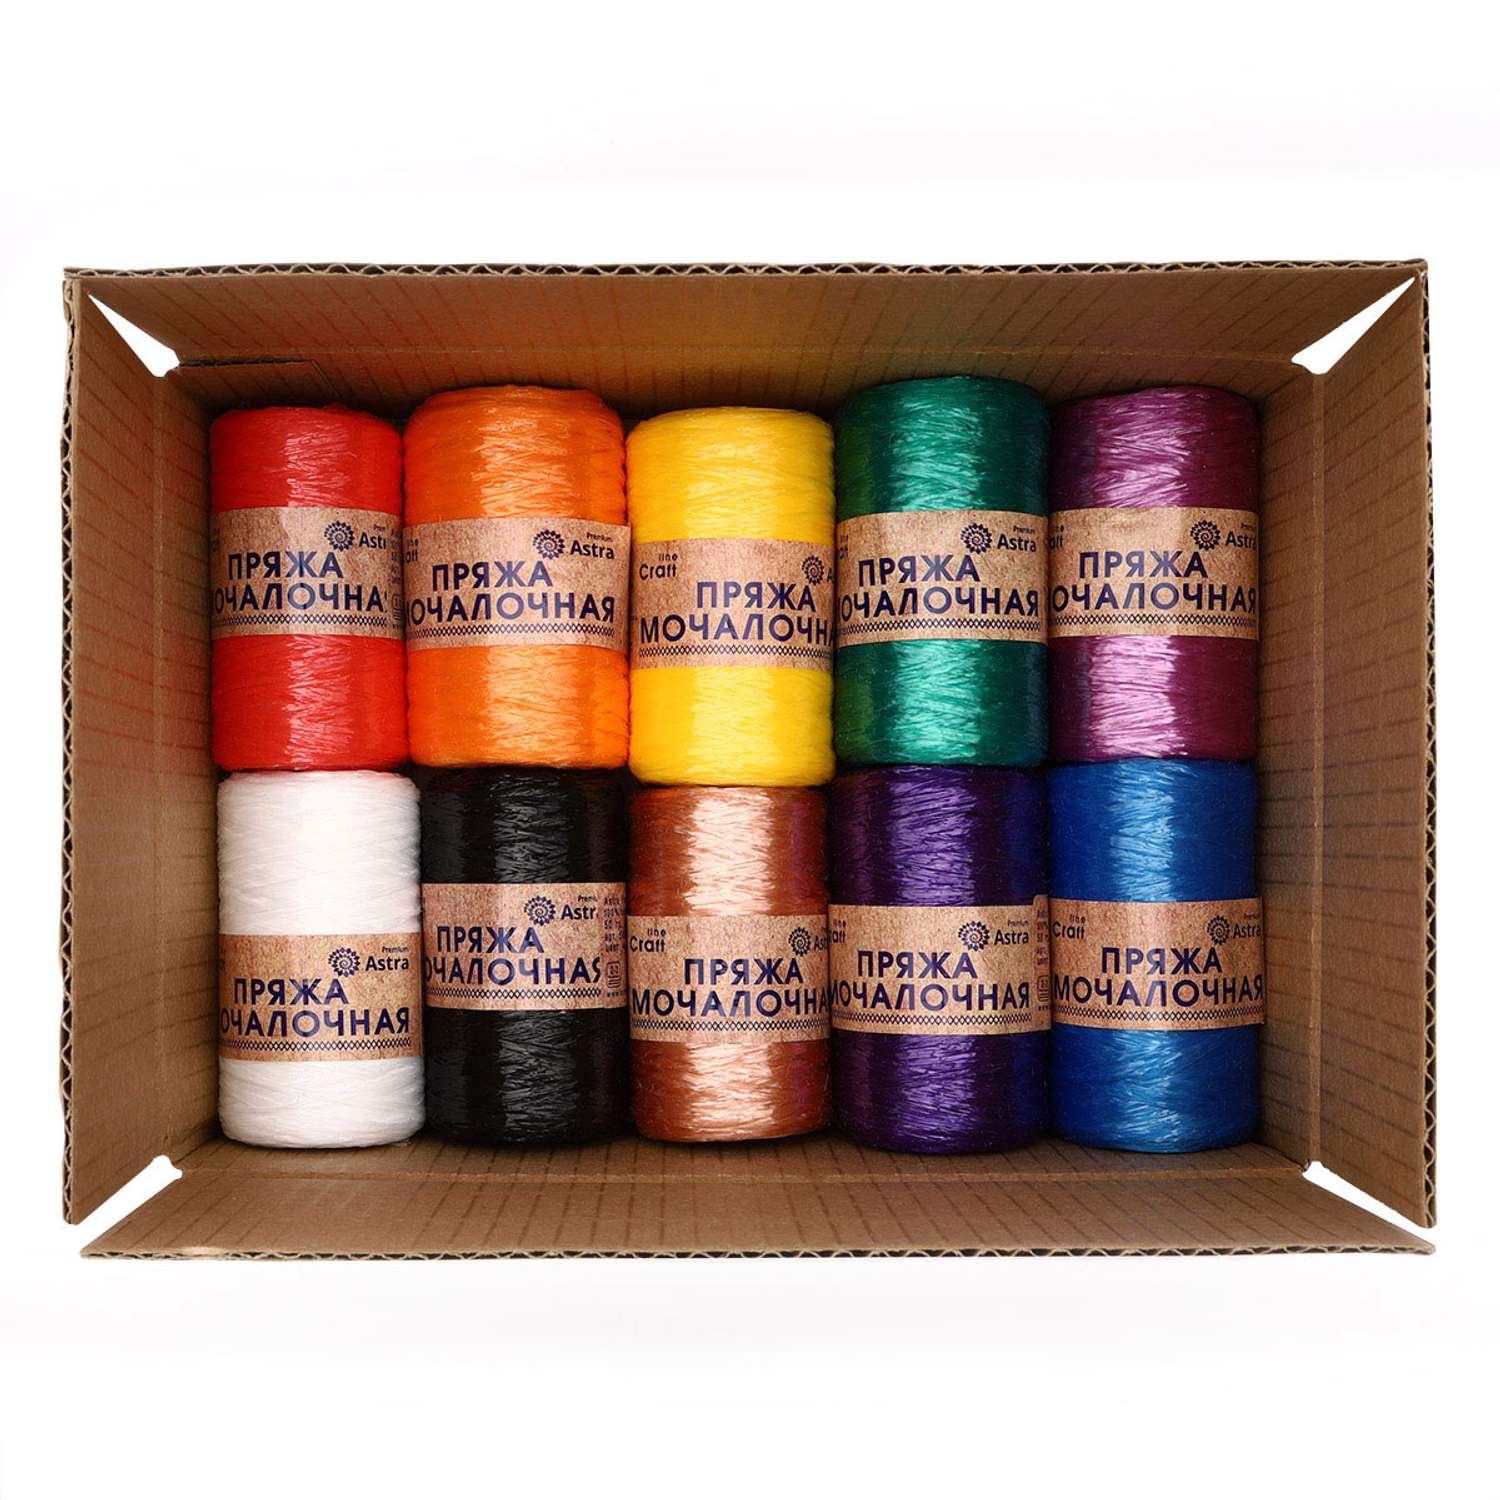 Пряжа Astra Premium для вязания мочалок пляжных сумок 200 м 10 шт разноцветные - фото 9